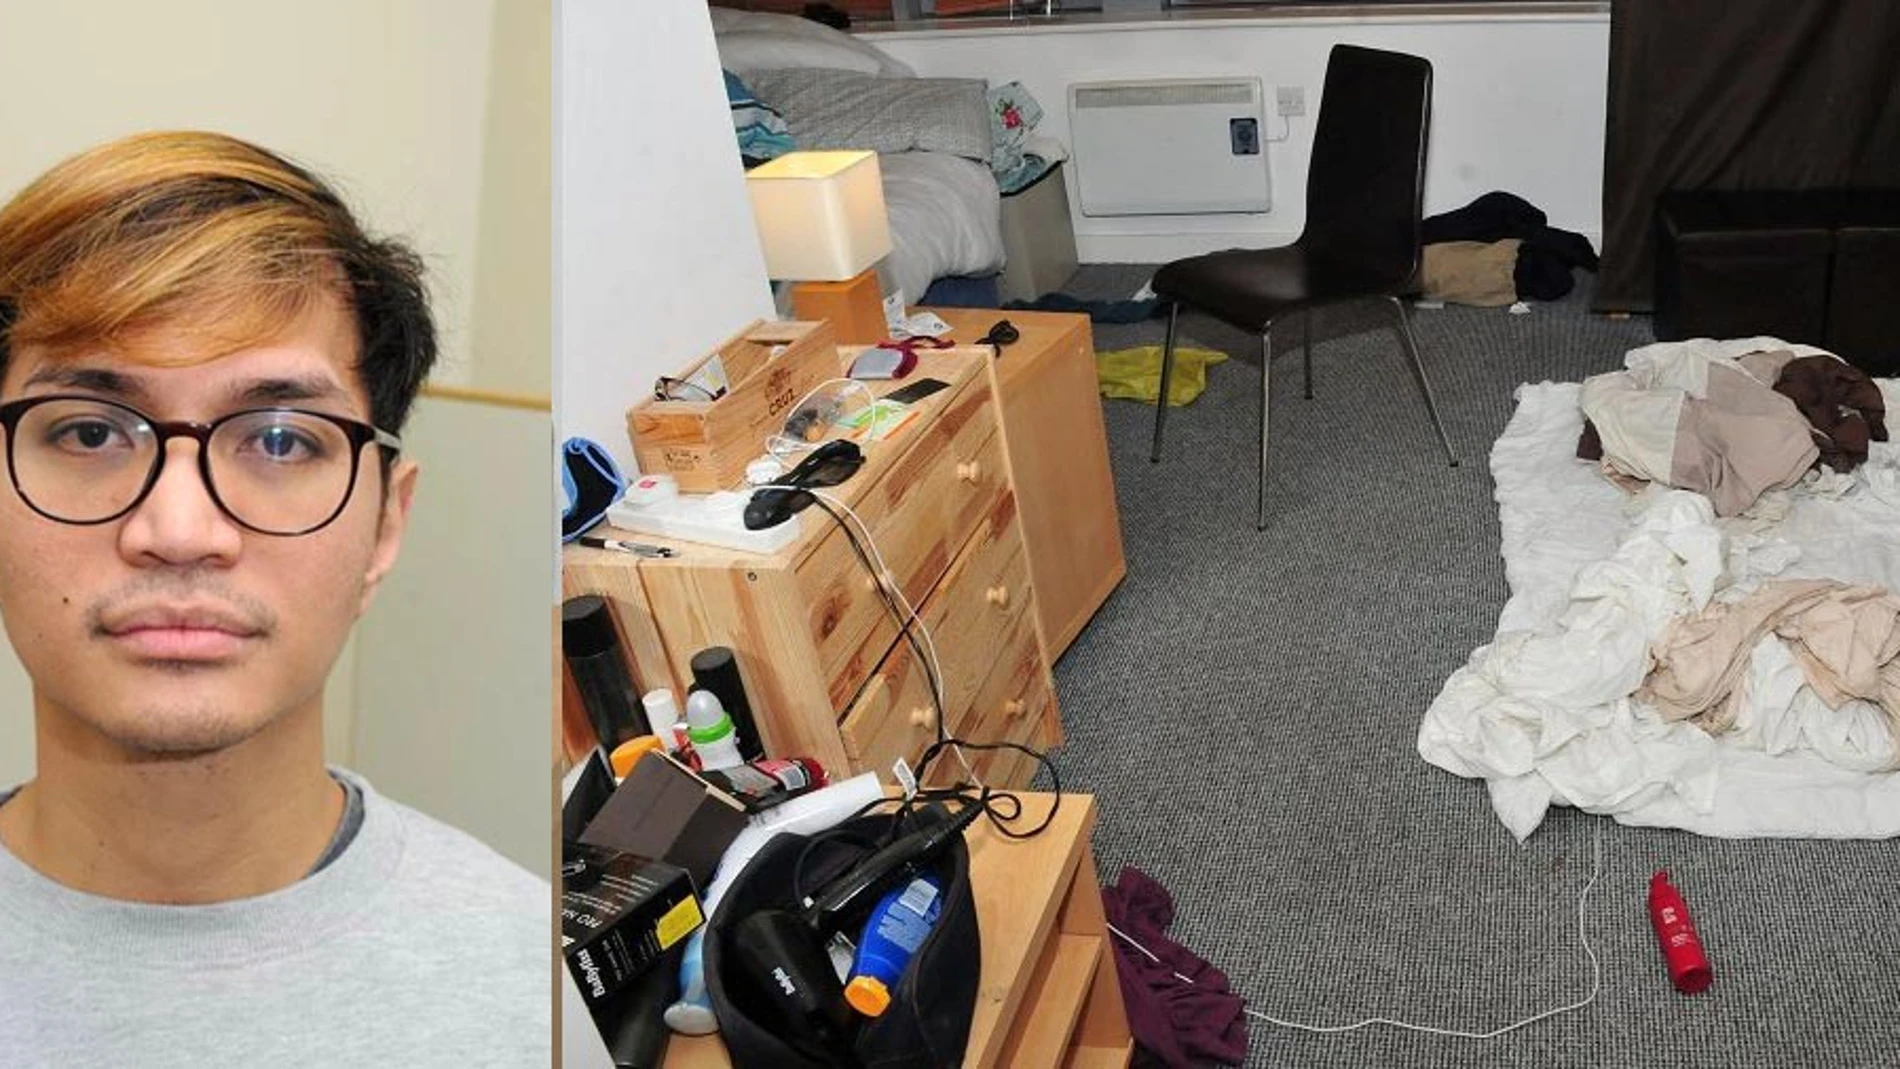 Imagen de Sinaga y su apartamento donde cometía las agresiones sexuales/REUTERS